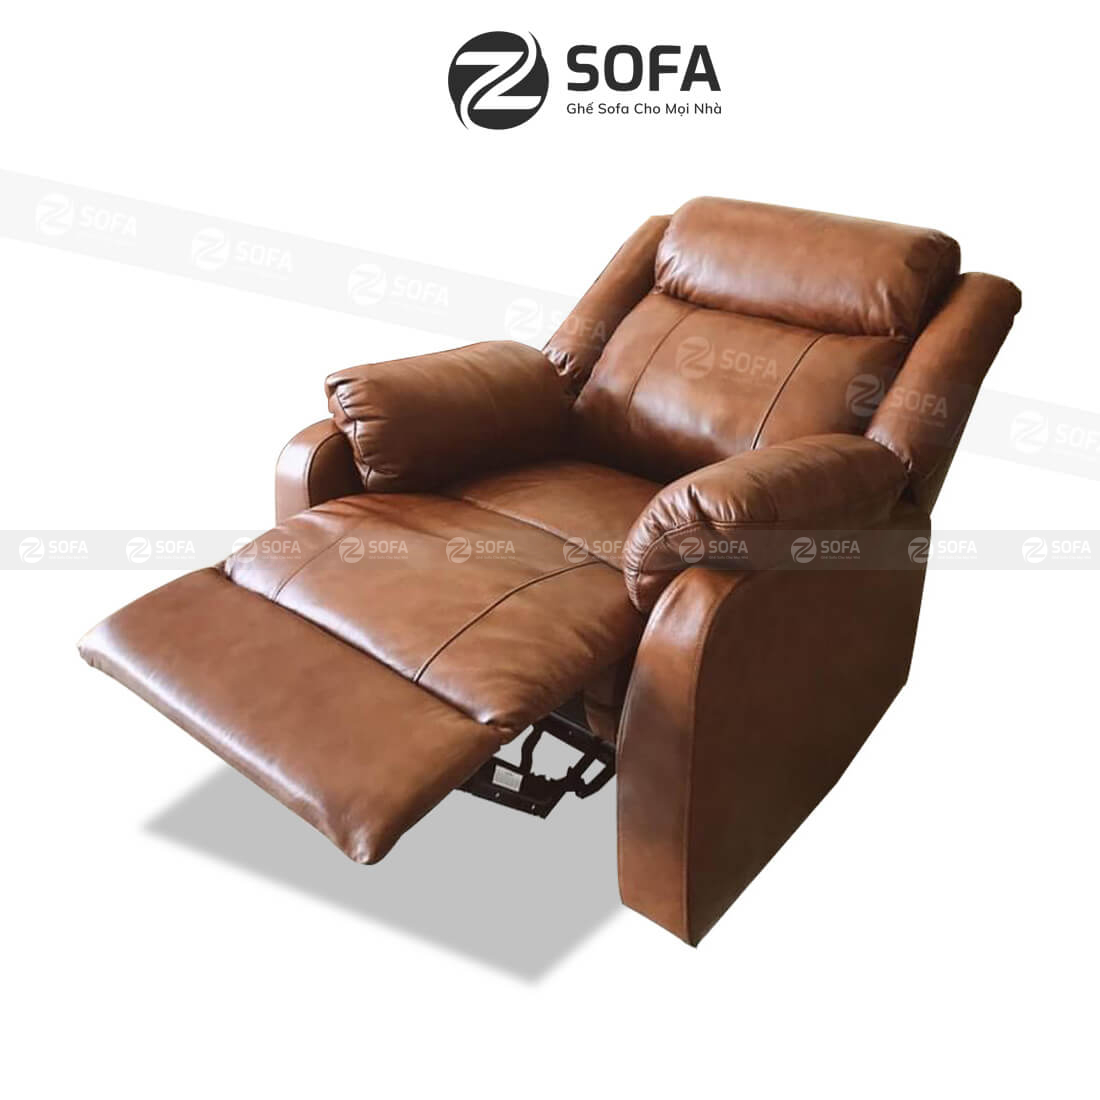 Chọn mua ghế sofa nằm ở Sài Gòn từ đâu tốt?